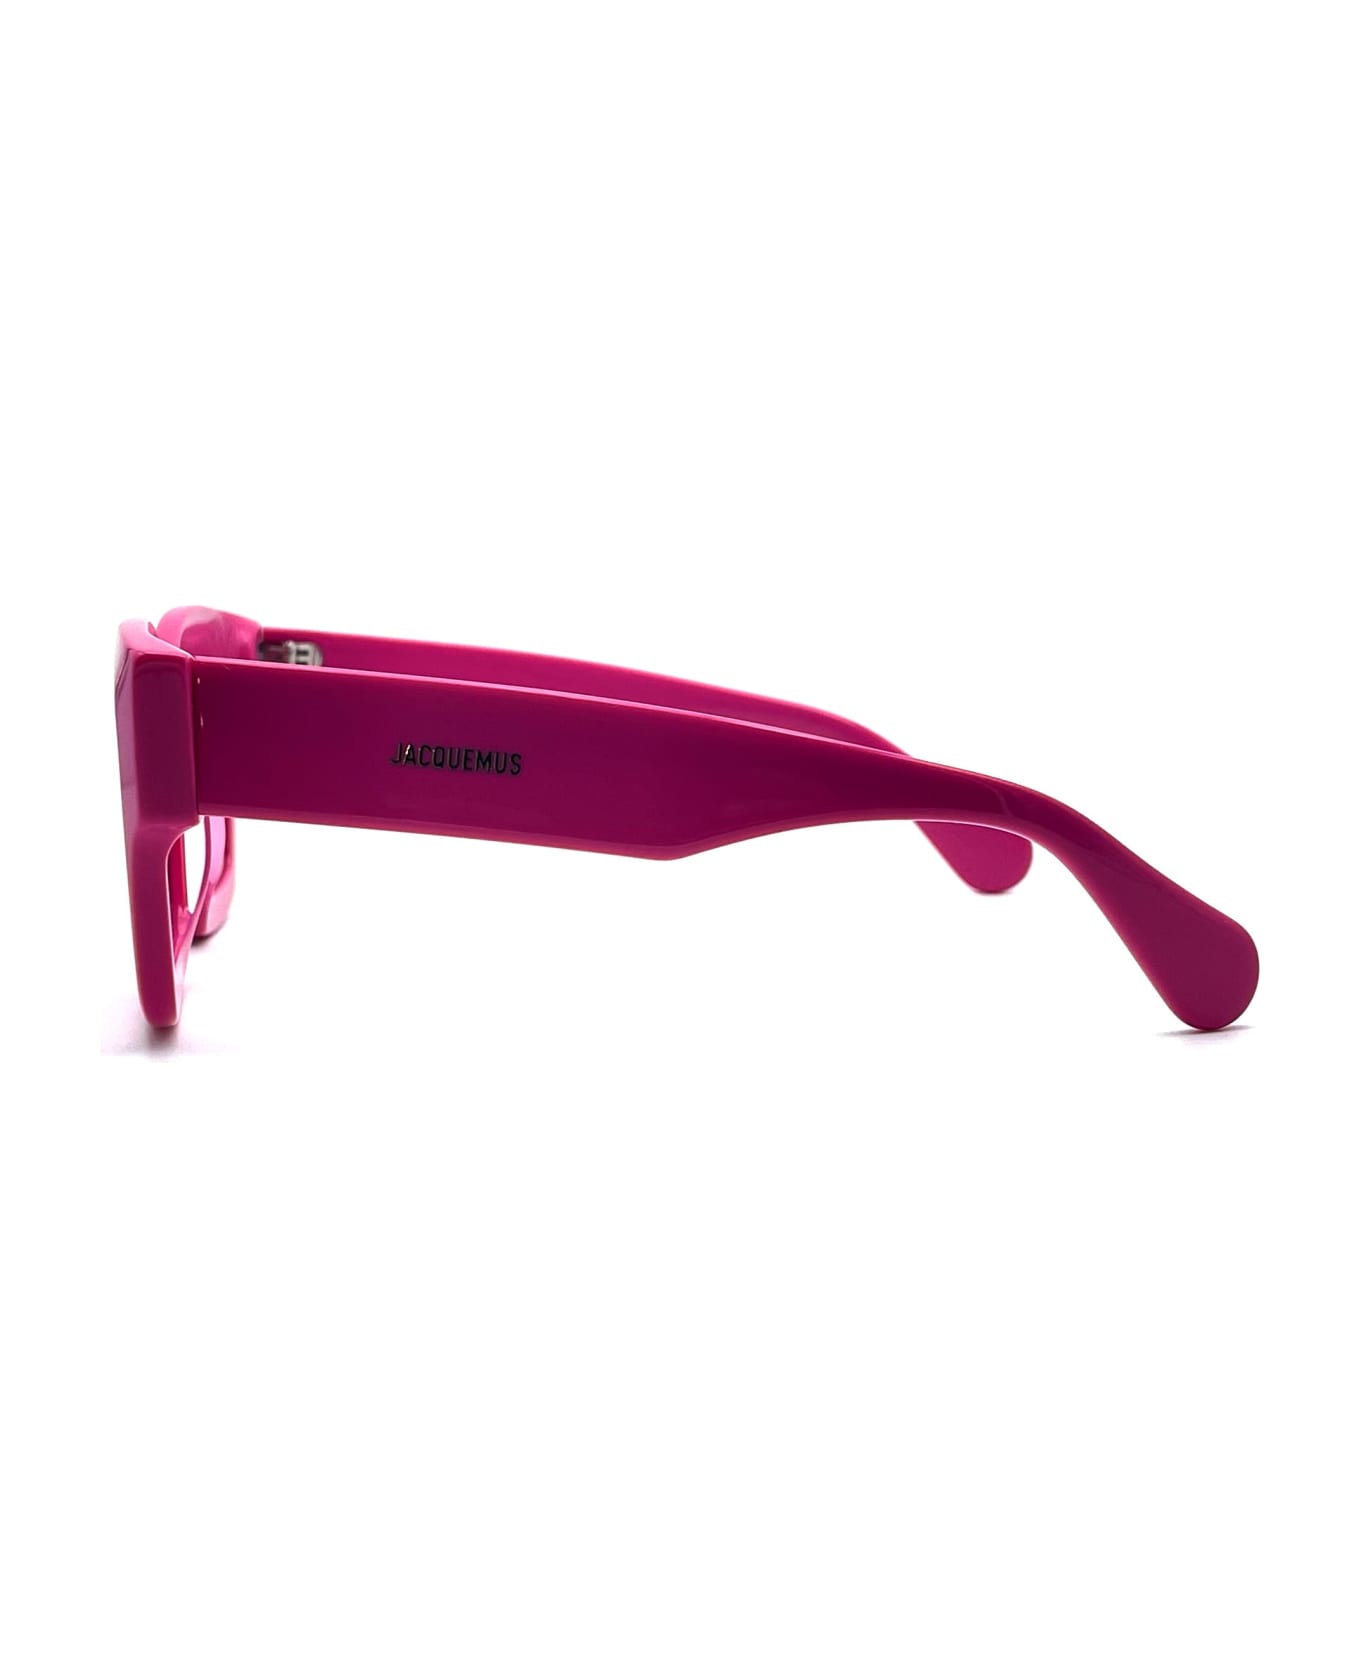 Jacquemus Les Lunettes Baci - Pink Sunglasses - pink